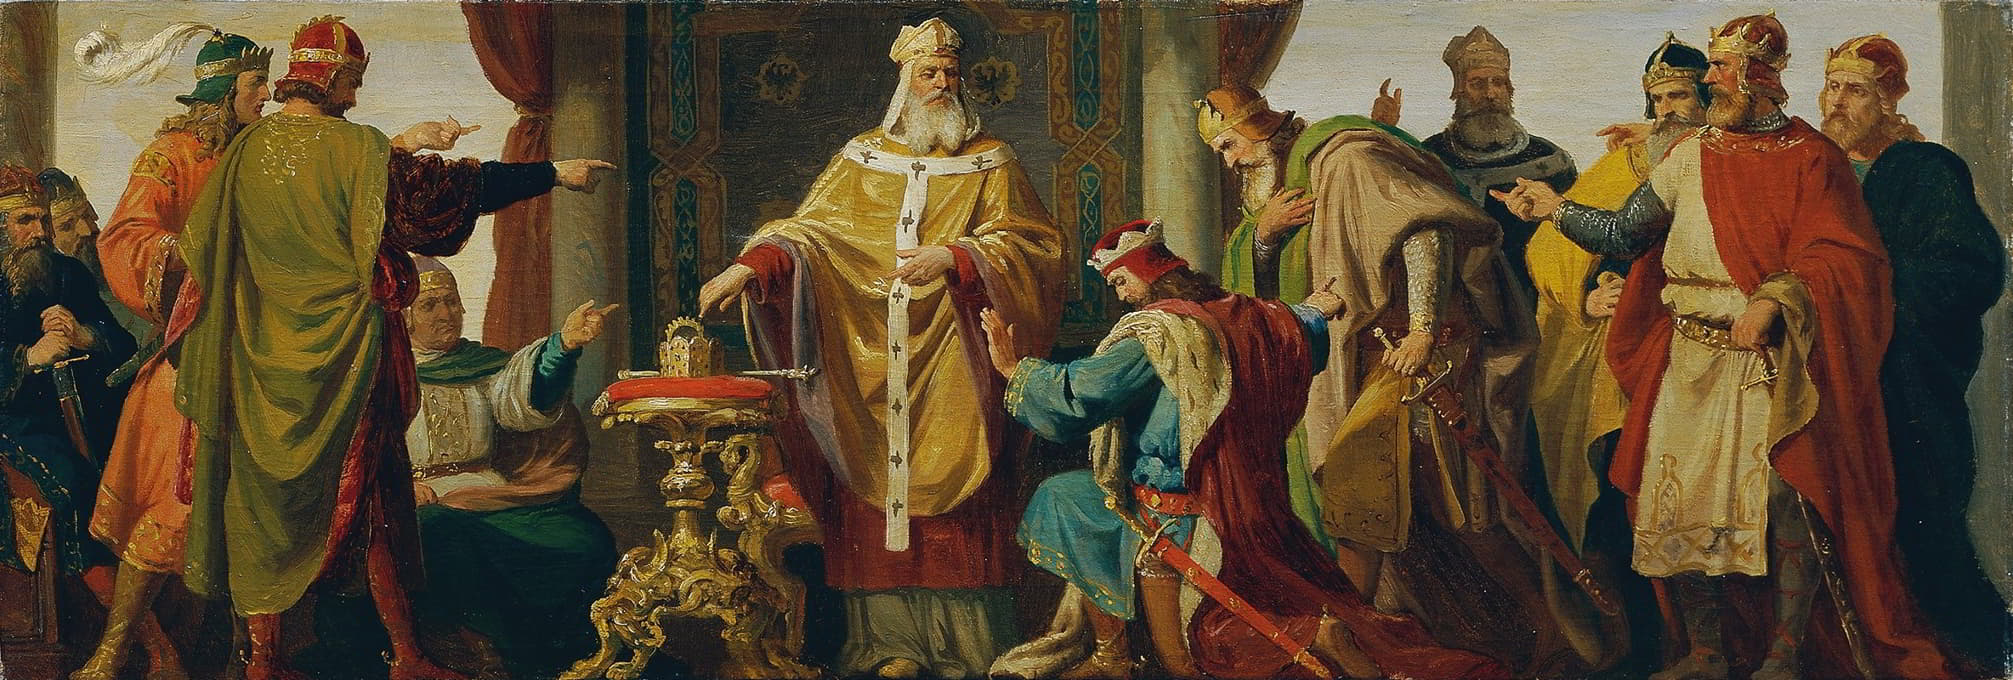 Karl von Blaas - Leopold der Heilige weist die Kaiserkrone zurück